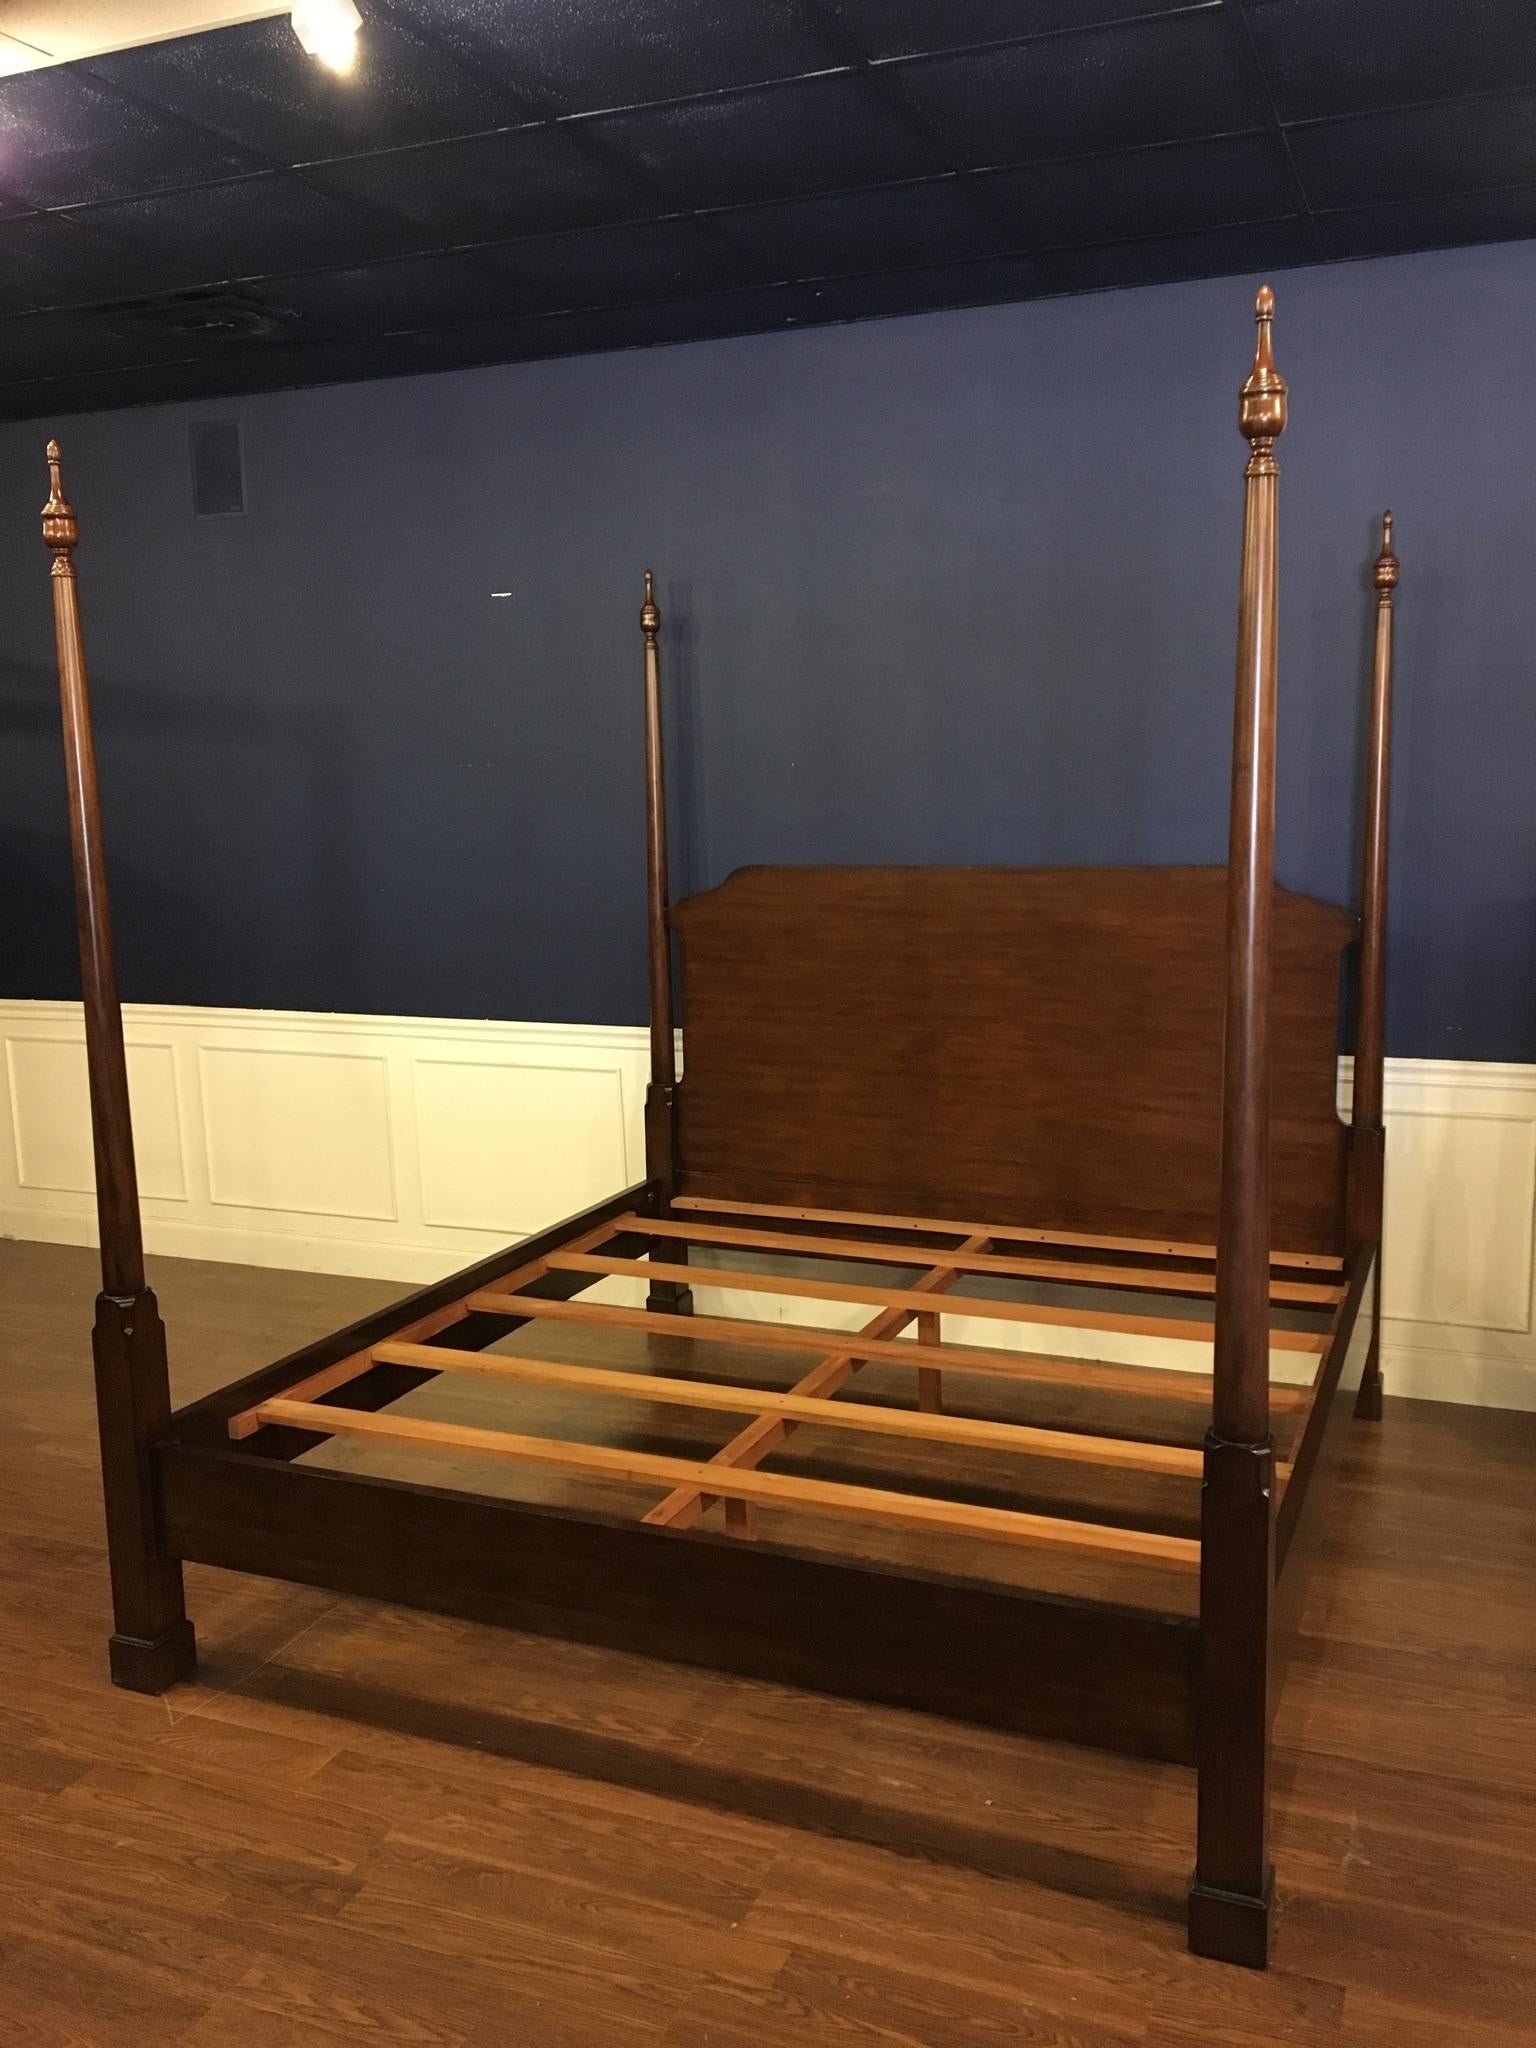 Dies ist eine neue traditionelle König Größe Mahagoni Pencil Post Bett von Leighton Hall Furniture. Das Design wurde von Posterbetten aus der Regency-Periode inspiriert und zeichnet sich durch einfache, runde, konische Pfosten und ein Kopfteil aus